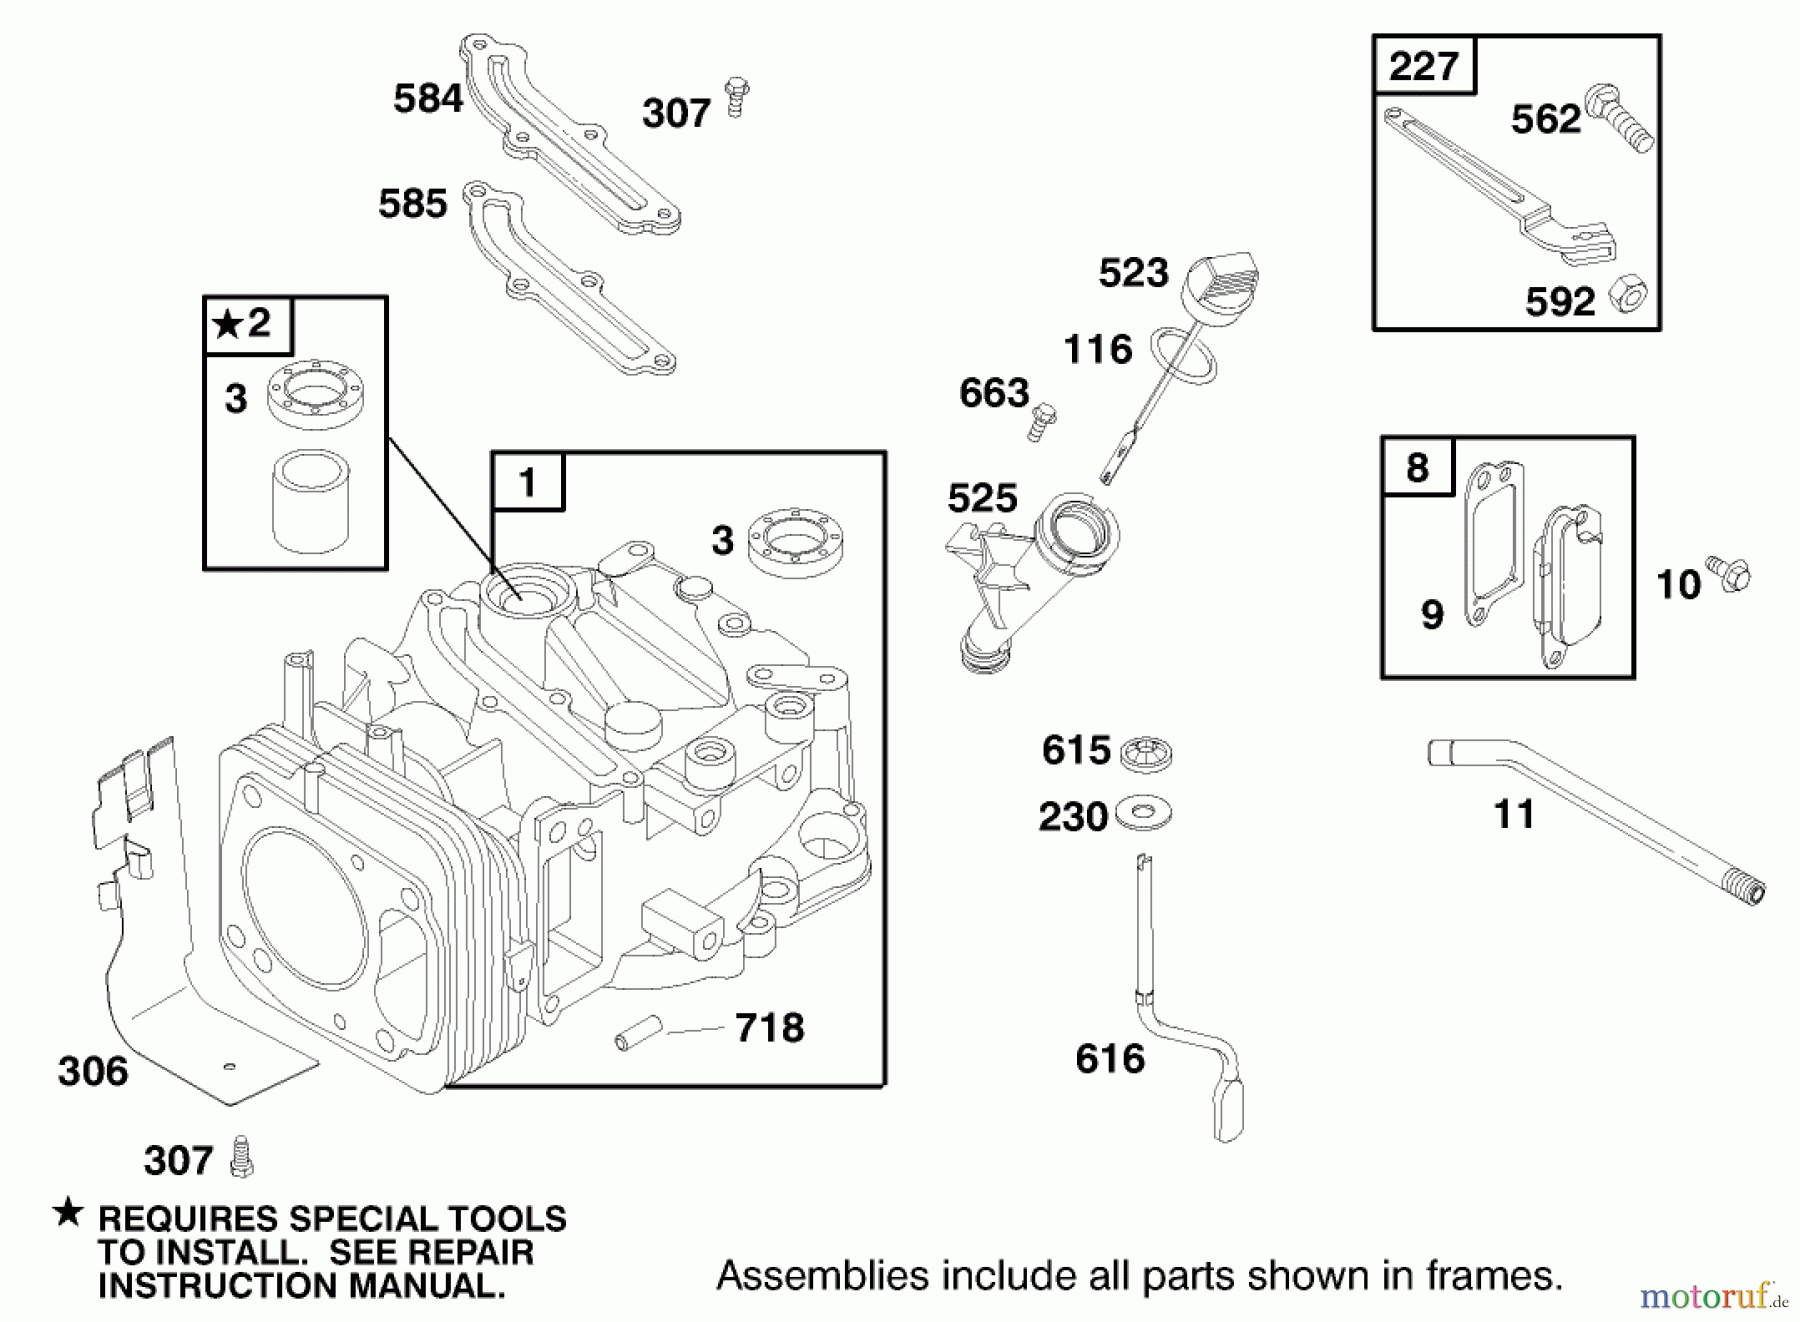  Toro Neu Mowers, Walk-Behind Seite 2 22161 - Toro Recycler Mower, 2000 (200000001-200999999) ENGINE GTS-200 #1